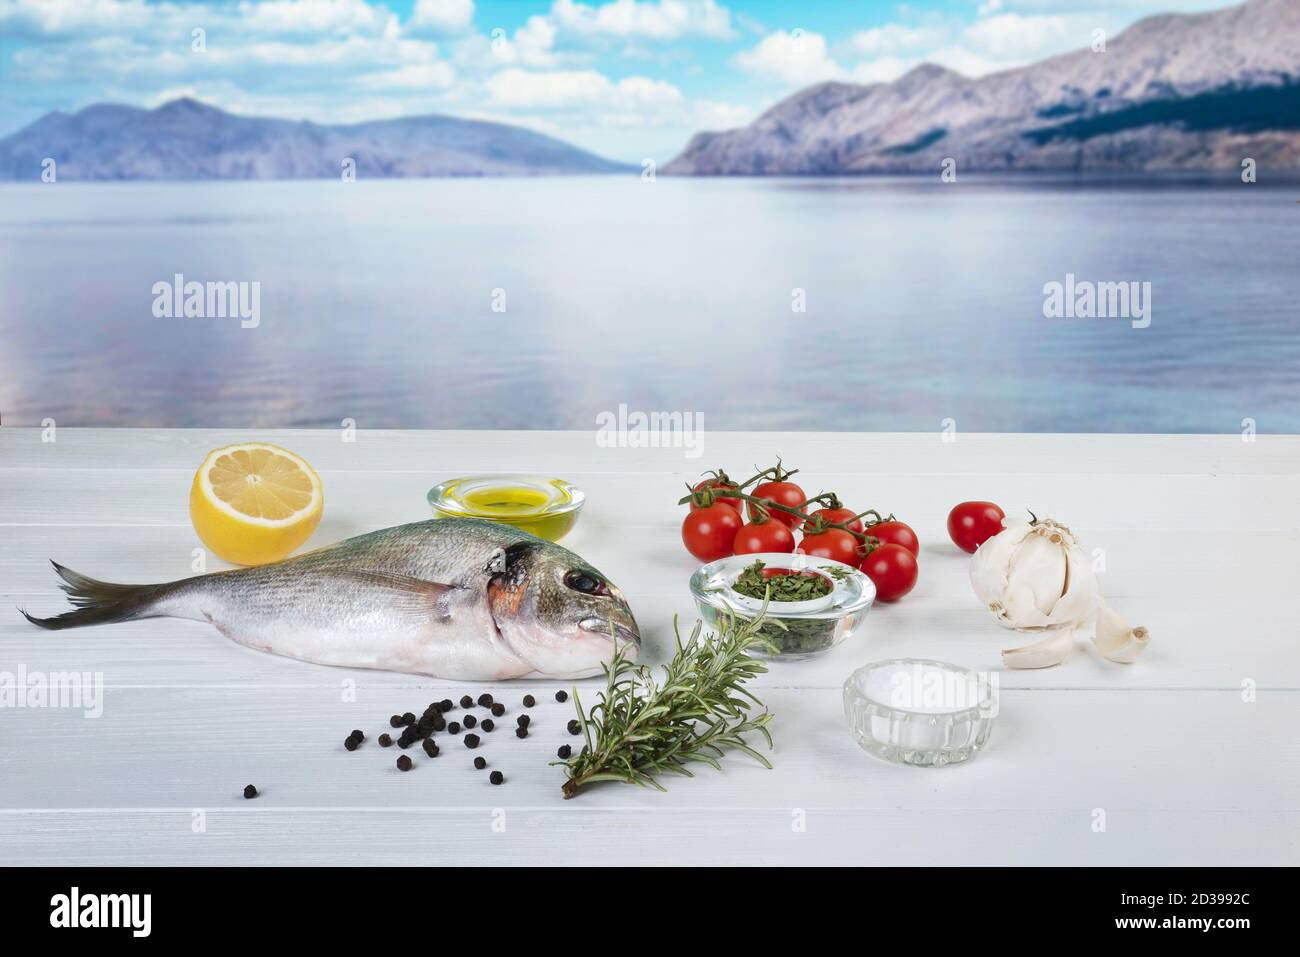 une dorade de mer et avec des produits pour la préparation de une recette sur une table en bois blanc avec la mer baie en arrière-plan Banque D'Images